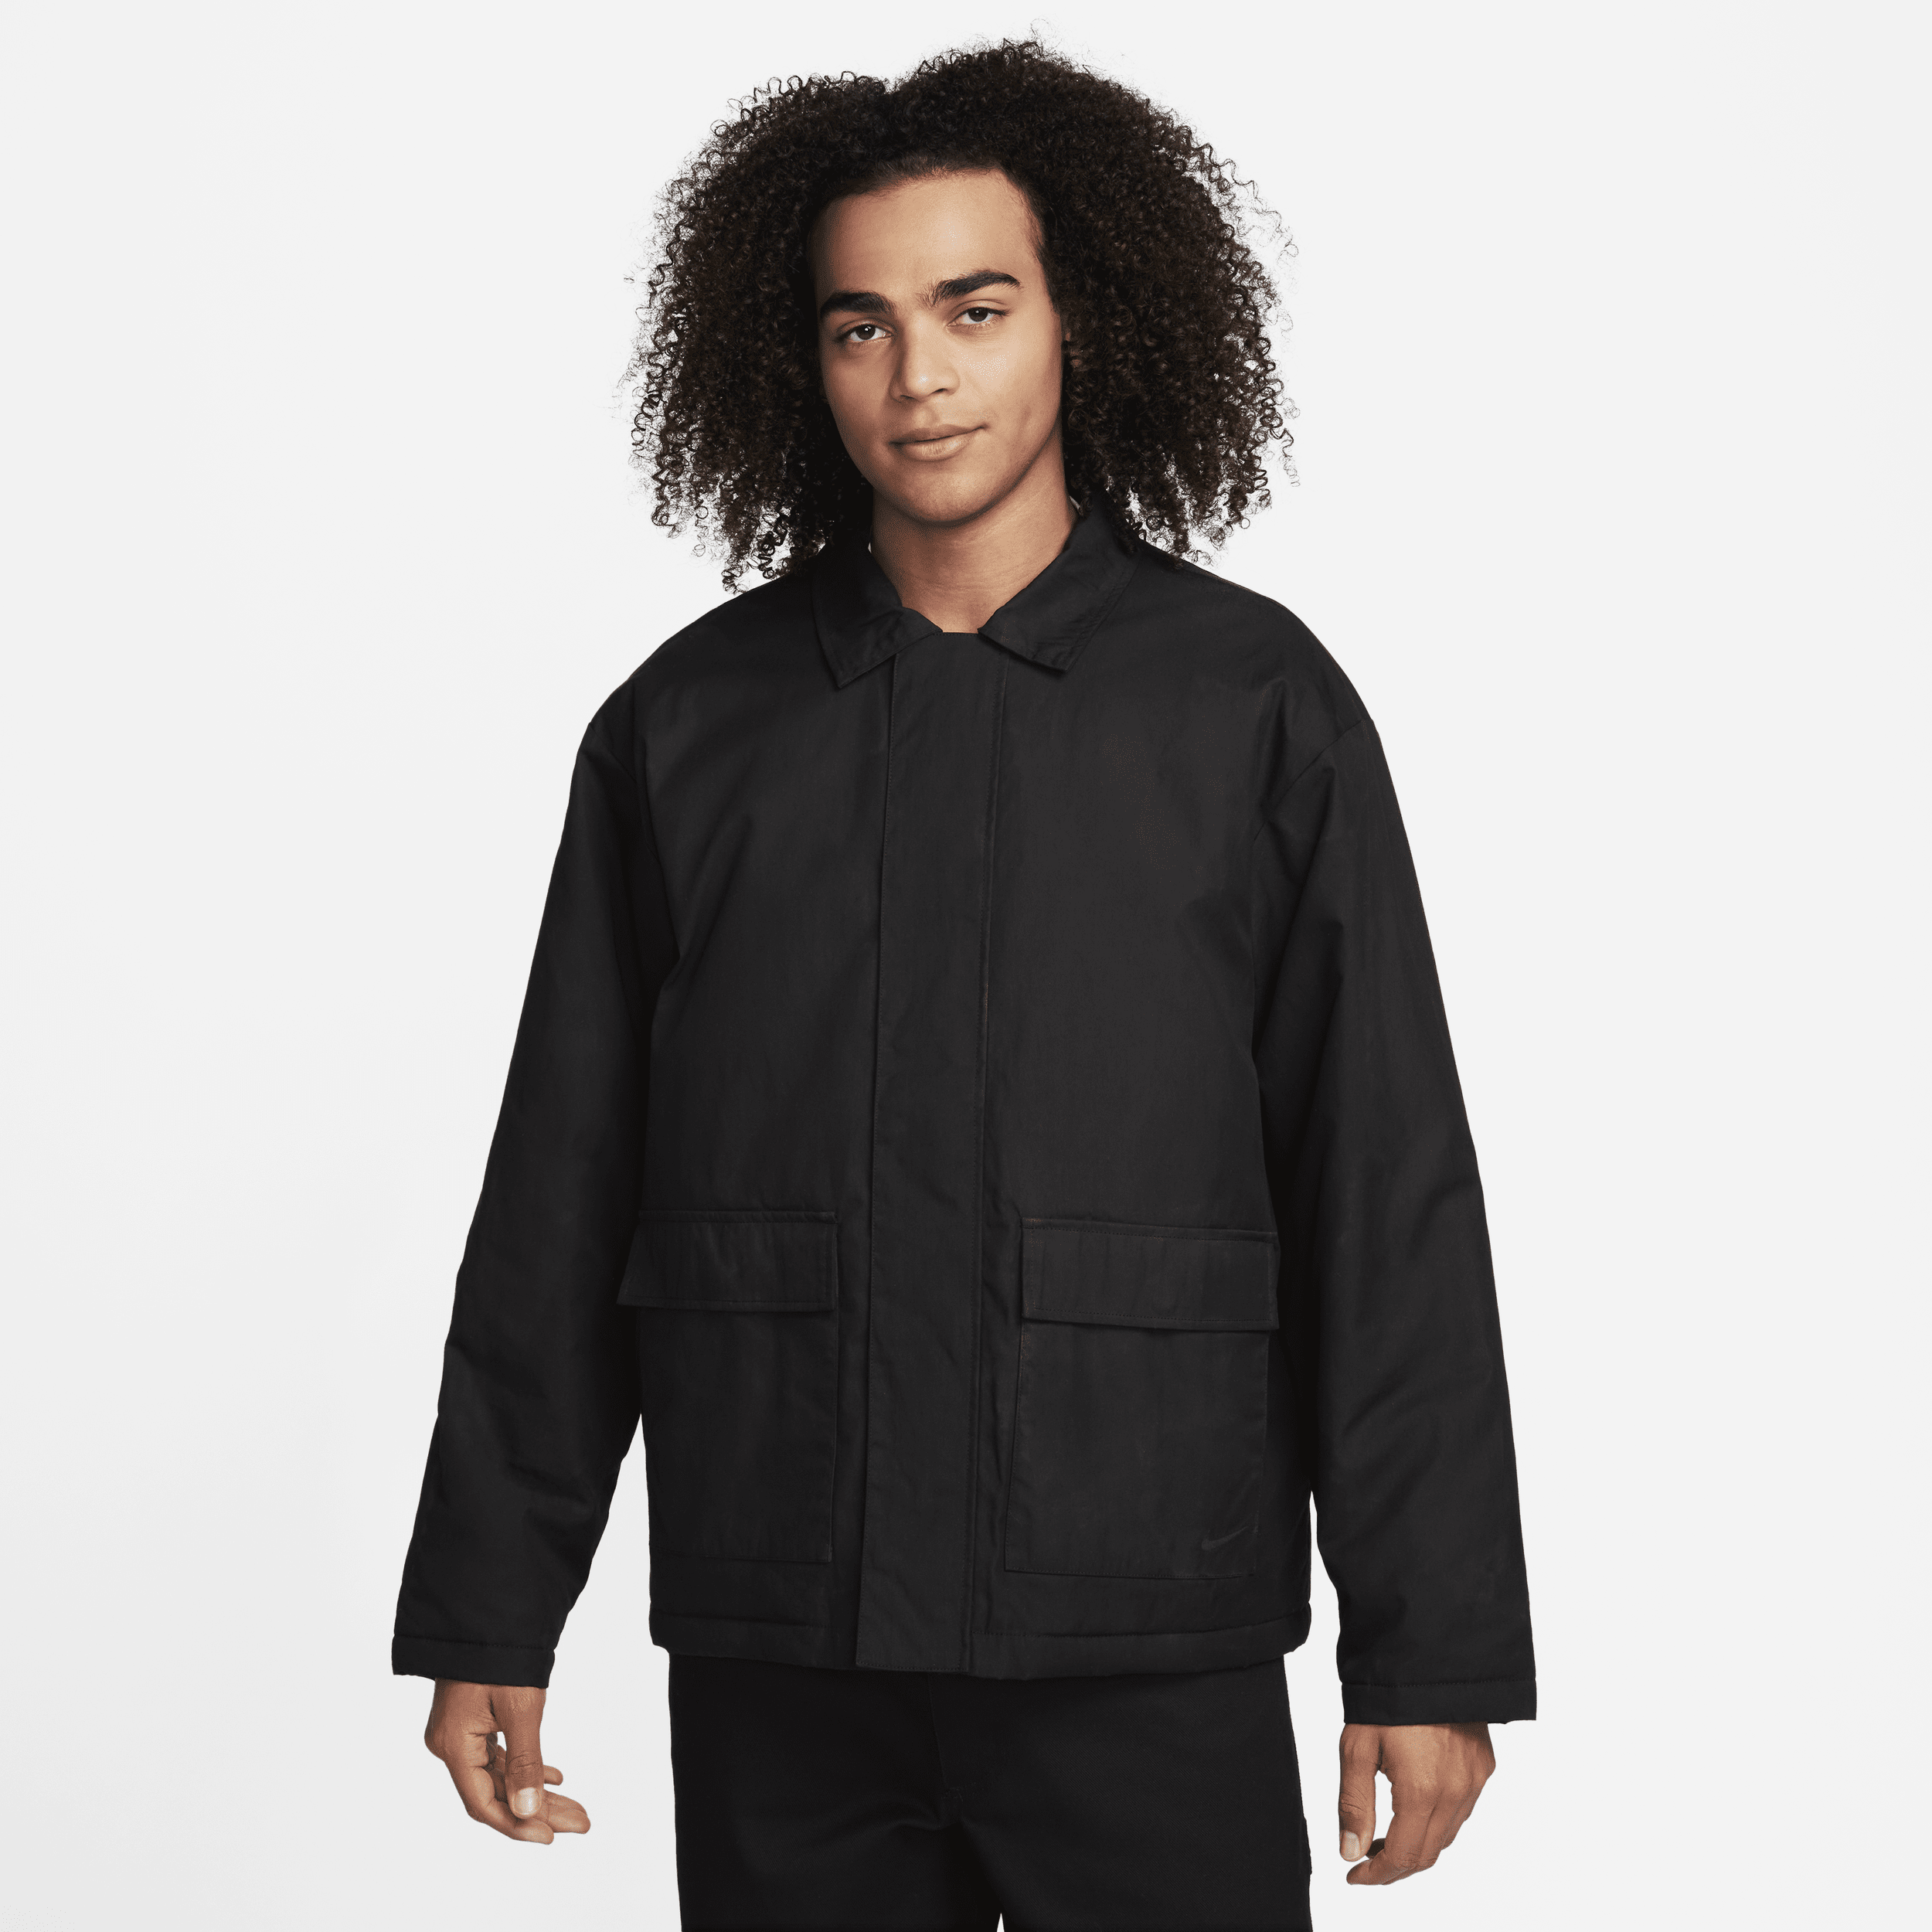 Voksbehandlet Nike Life-lærredsjakke til mænd - sort